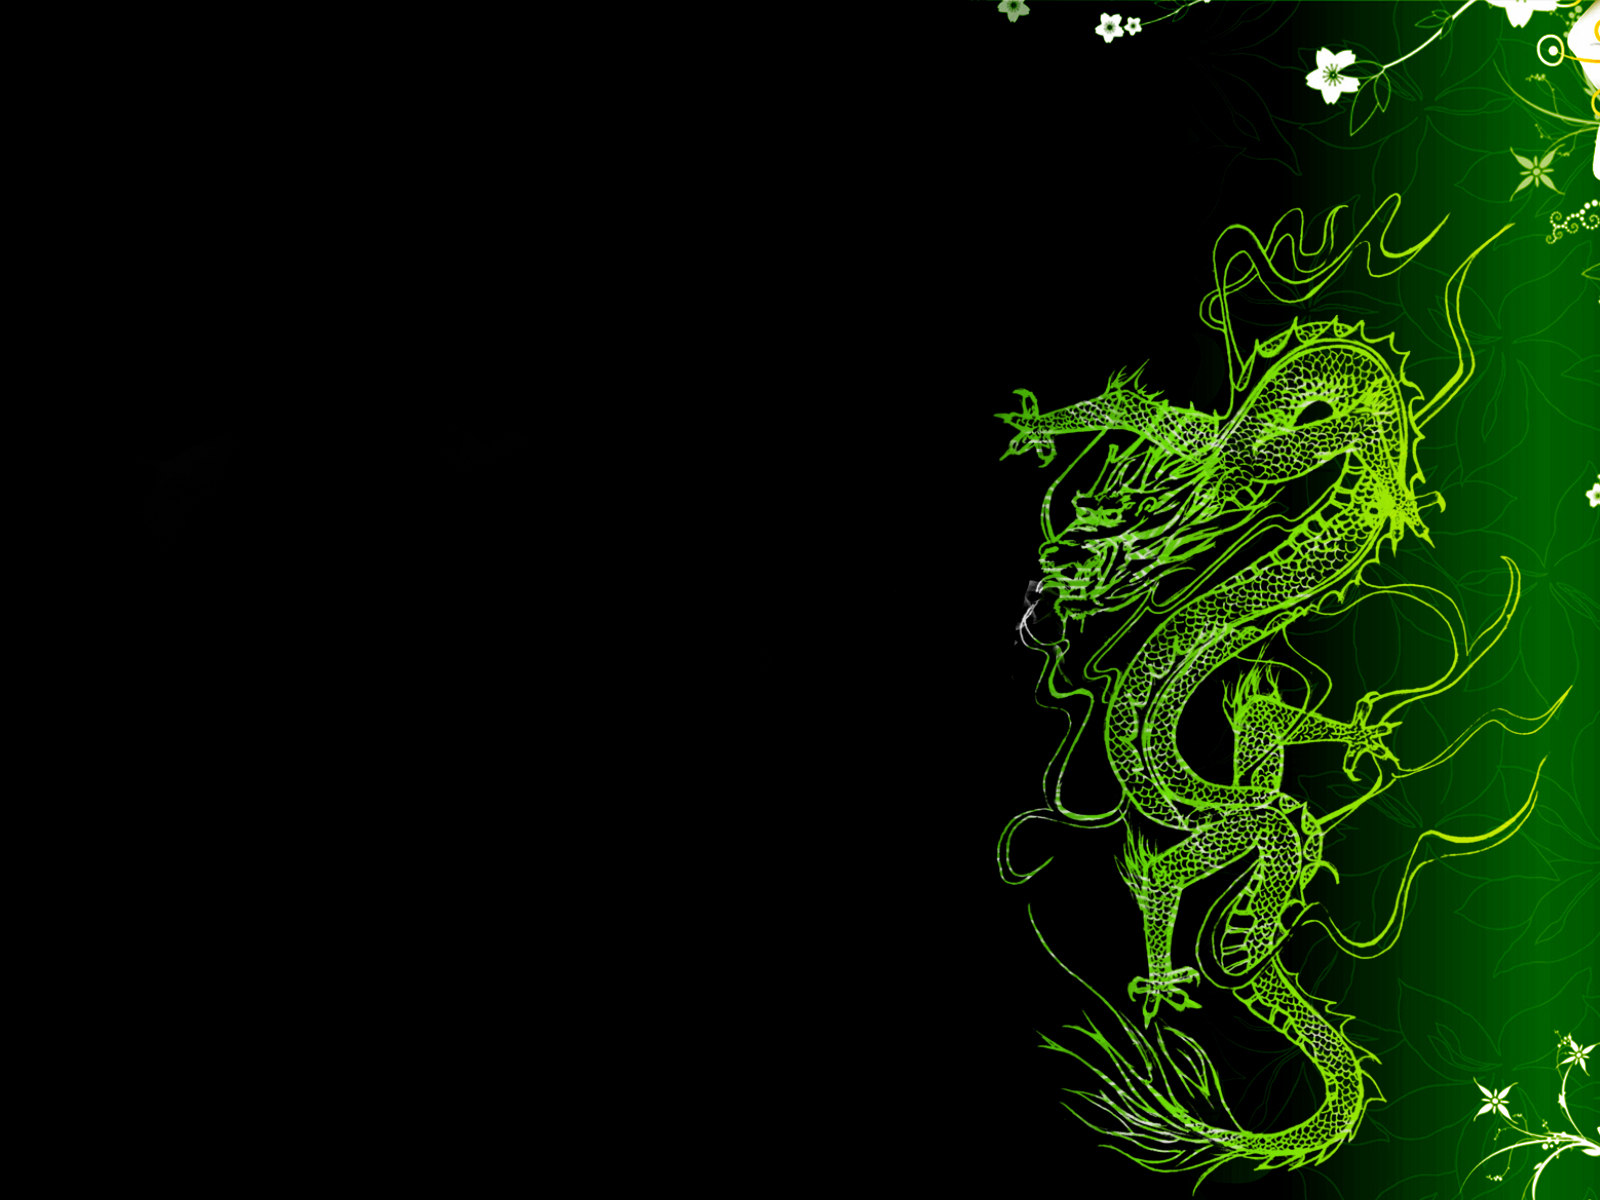 Asian Dragon Wallpaper By Djduzky